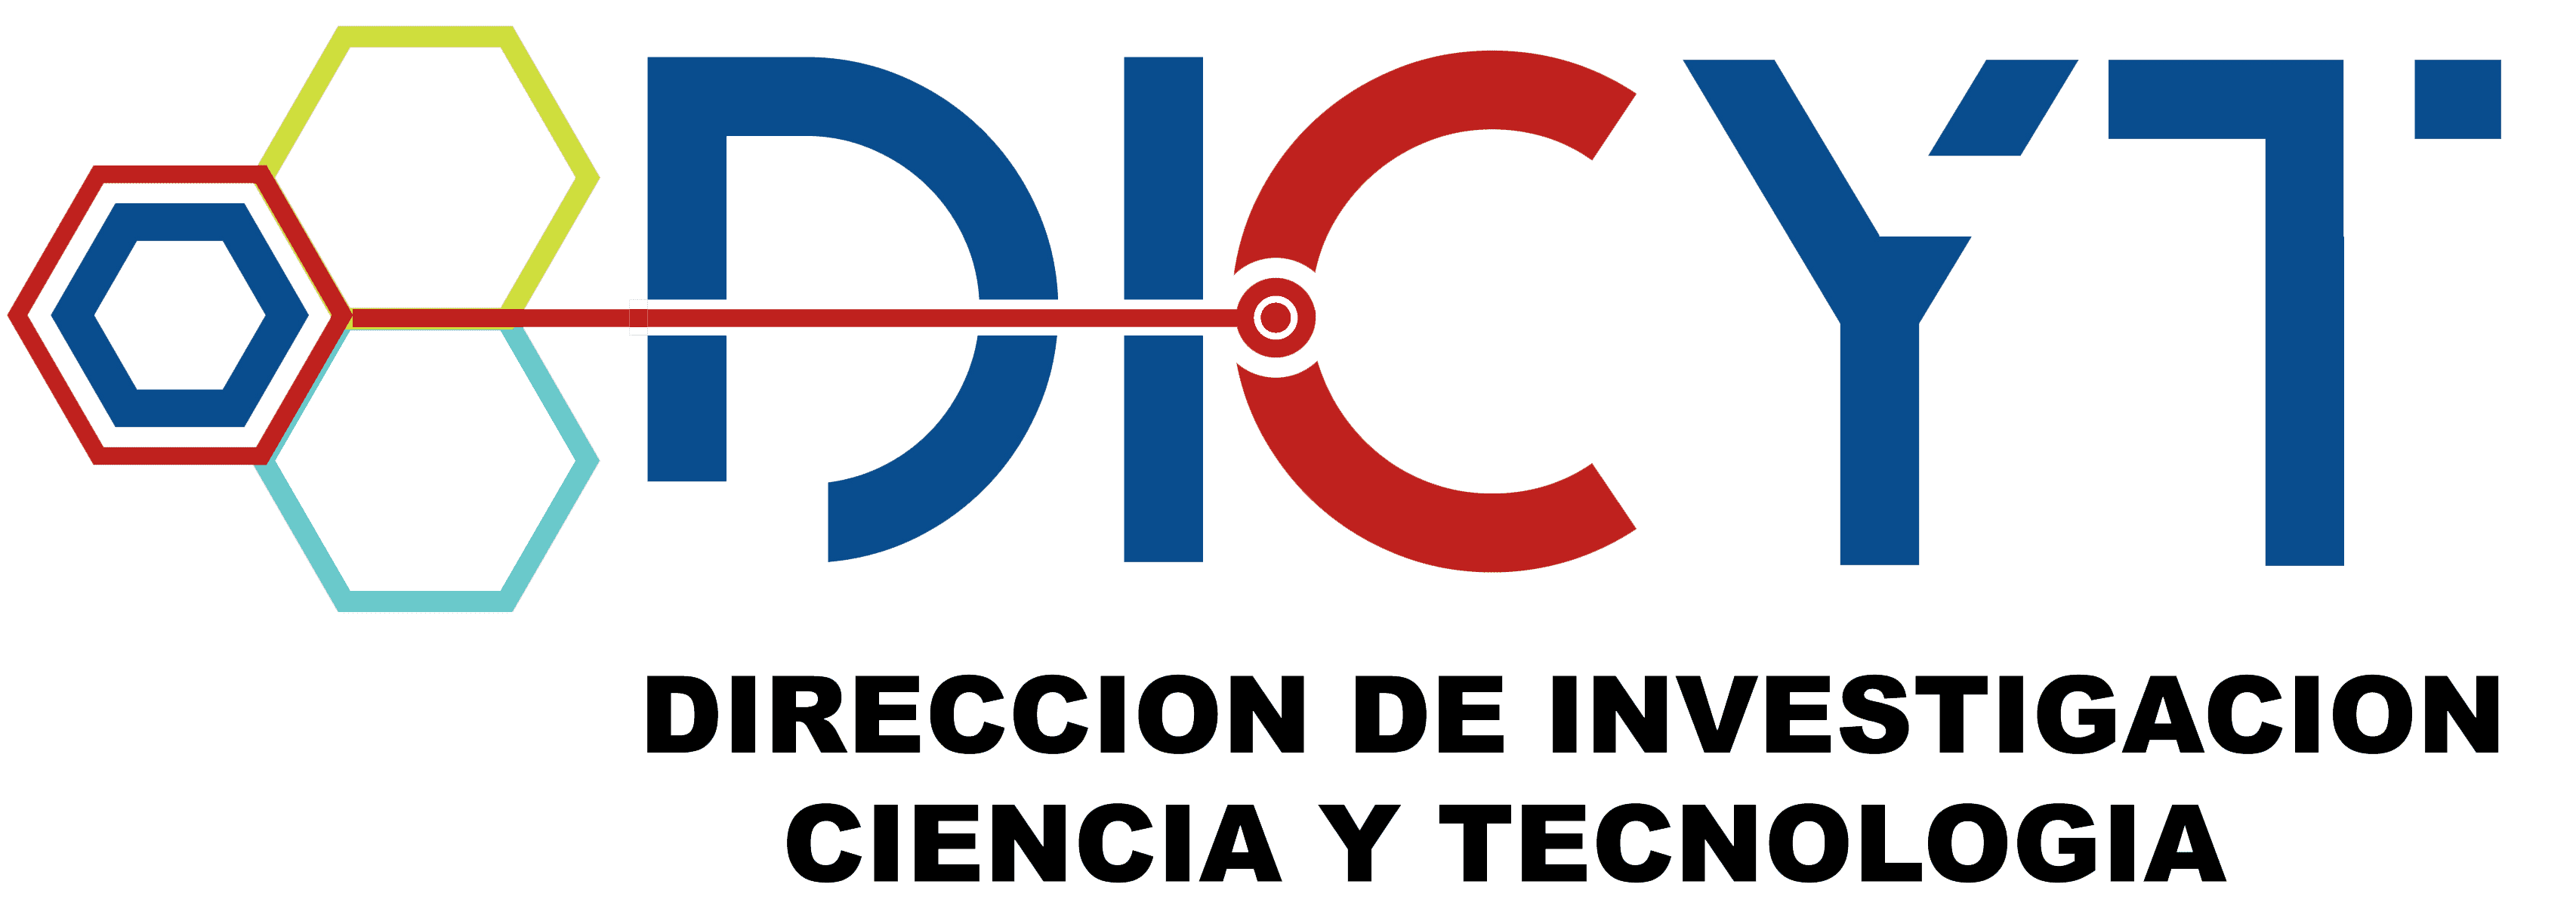 Dirección de Investigación, Ciencia y Tecnología